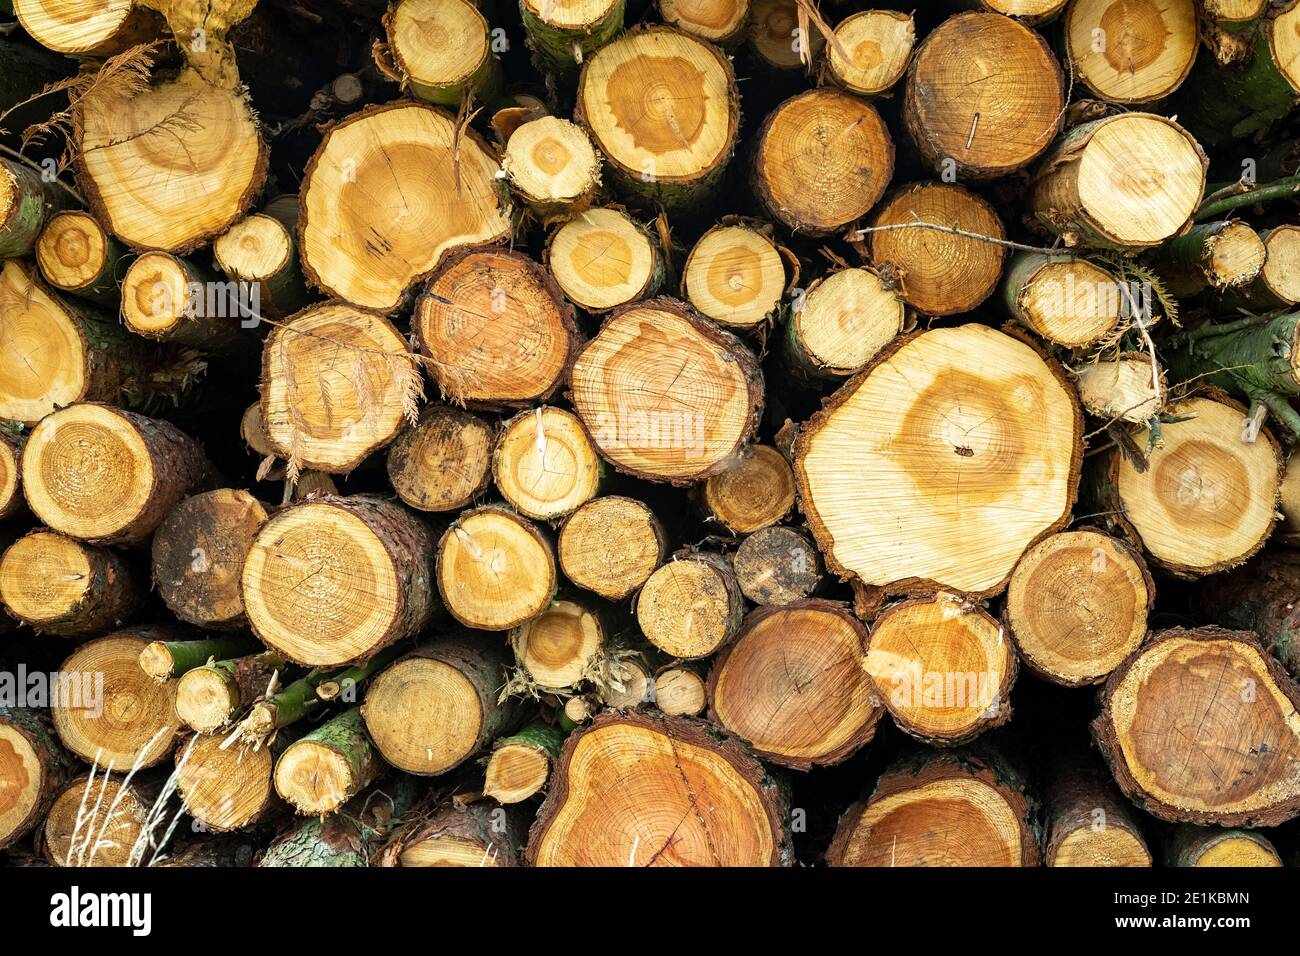 Pila de troncos de madera fresca de ramas picadas, Inglaterra, Reino Unido Foto de stock